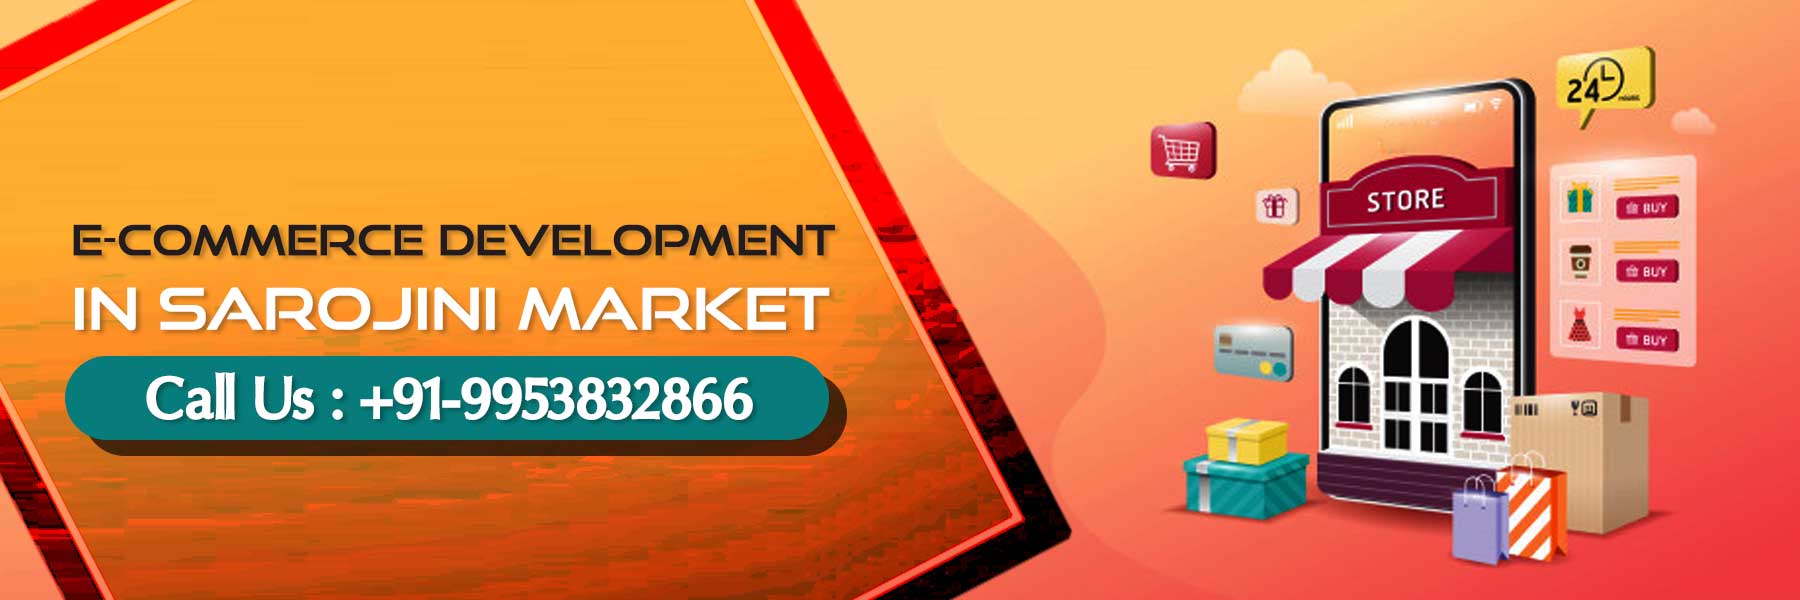 ecommerce development in Sarojini Market